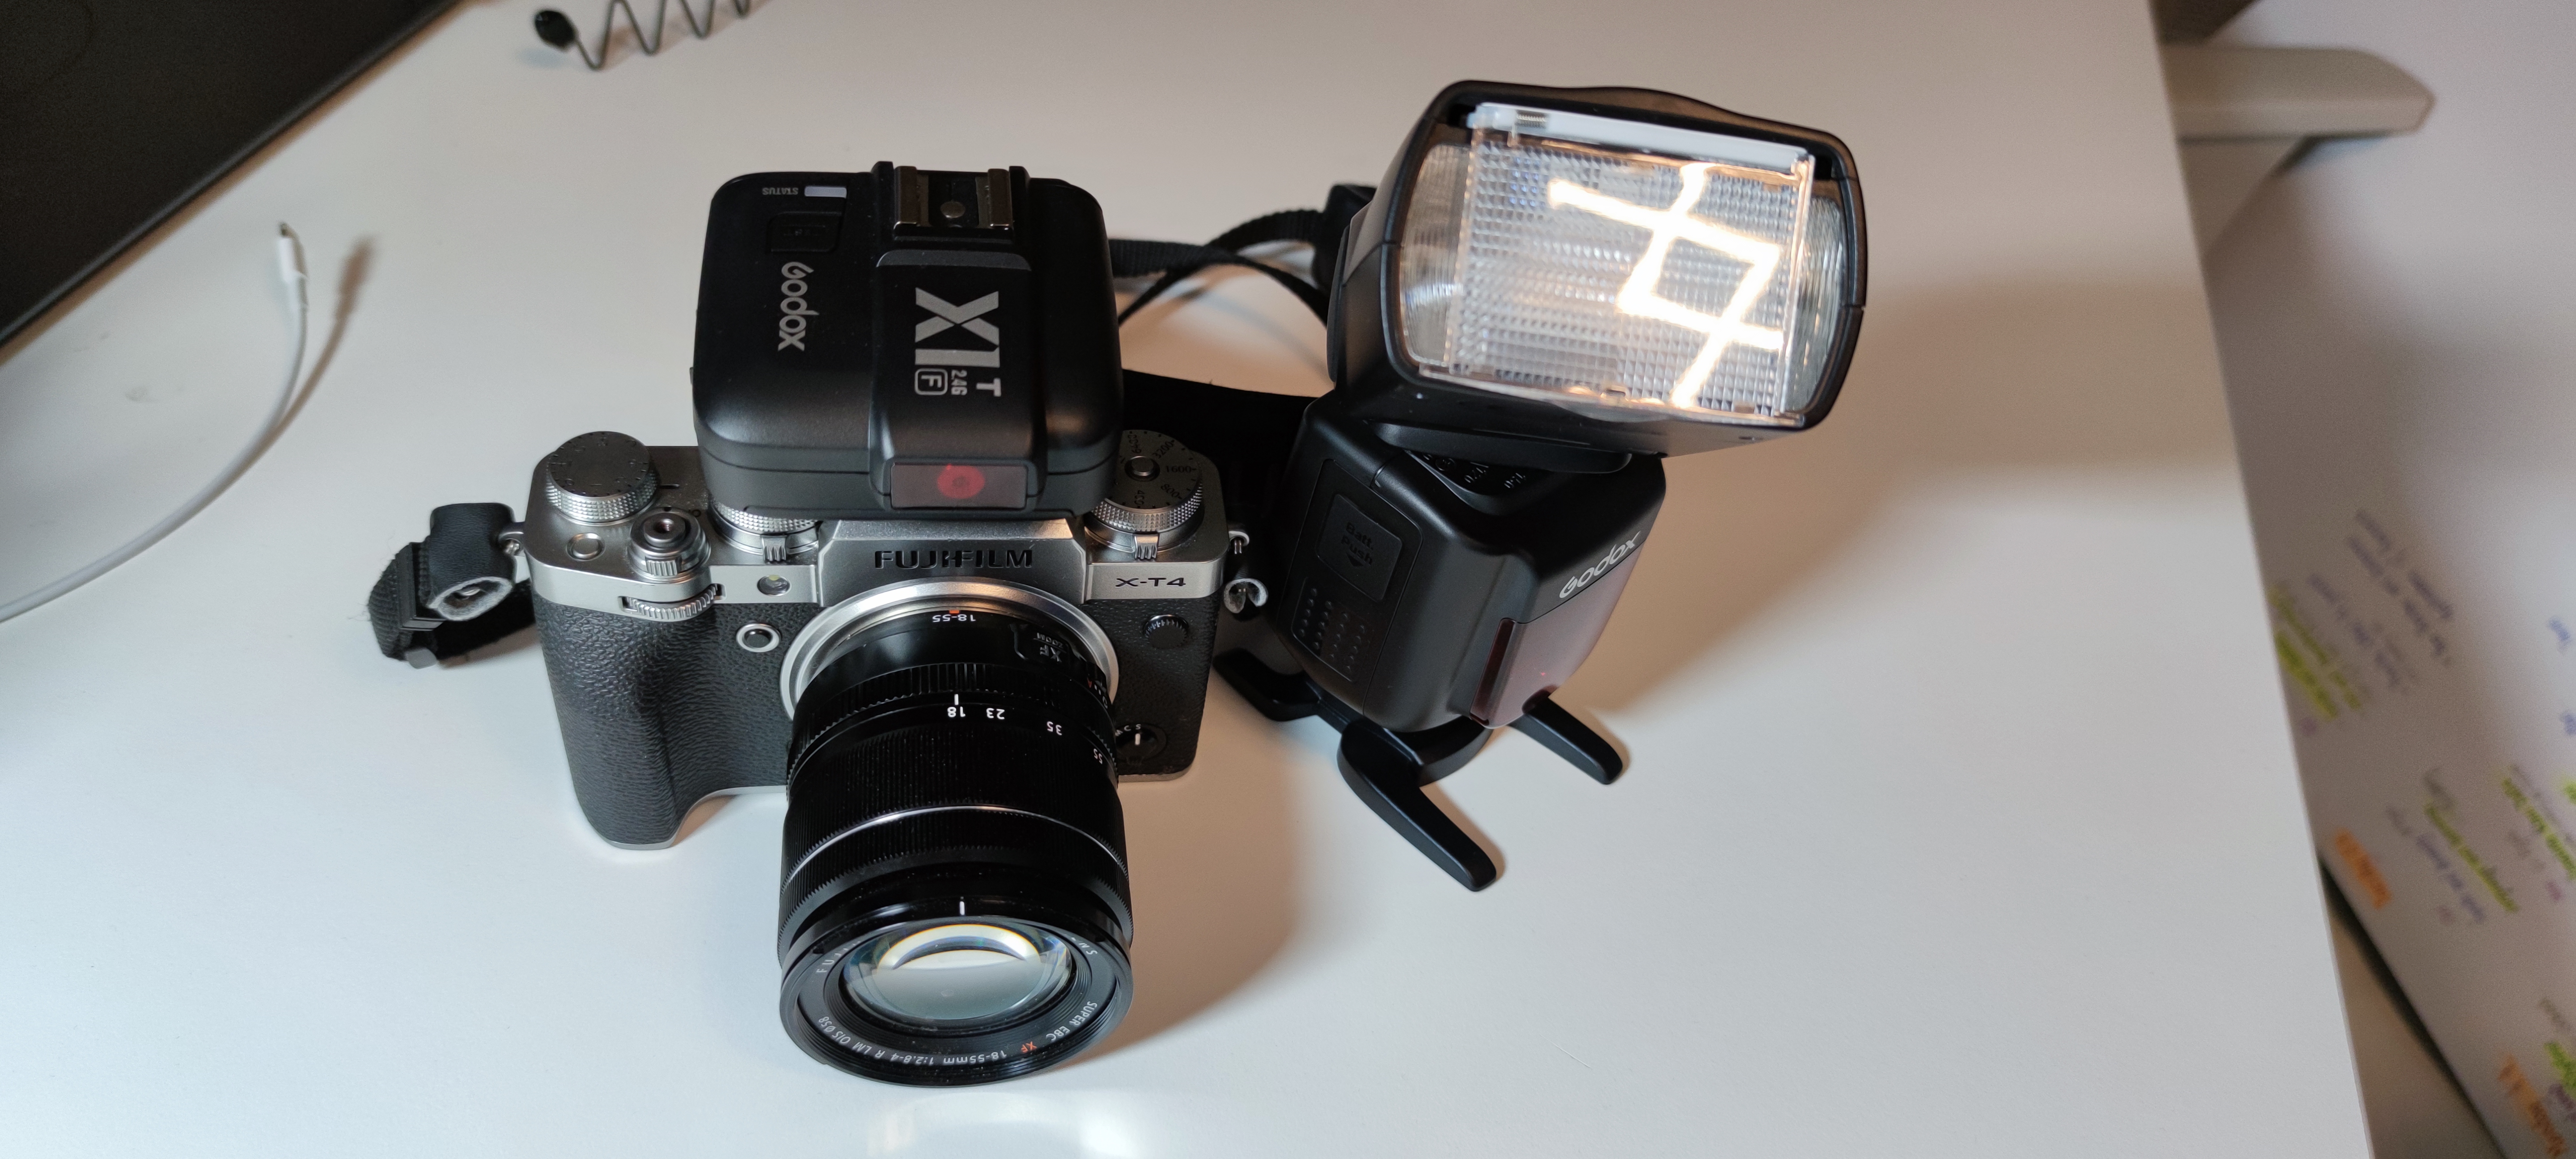 A Fujifilm camera, X-T4, with Godox V860IIF flash and a Godox GX1 remote trigger